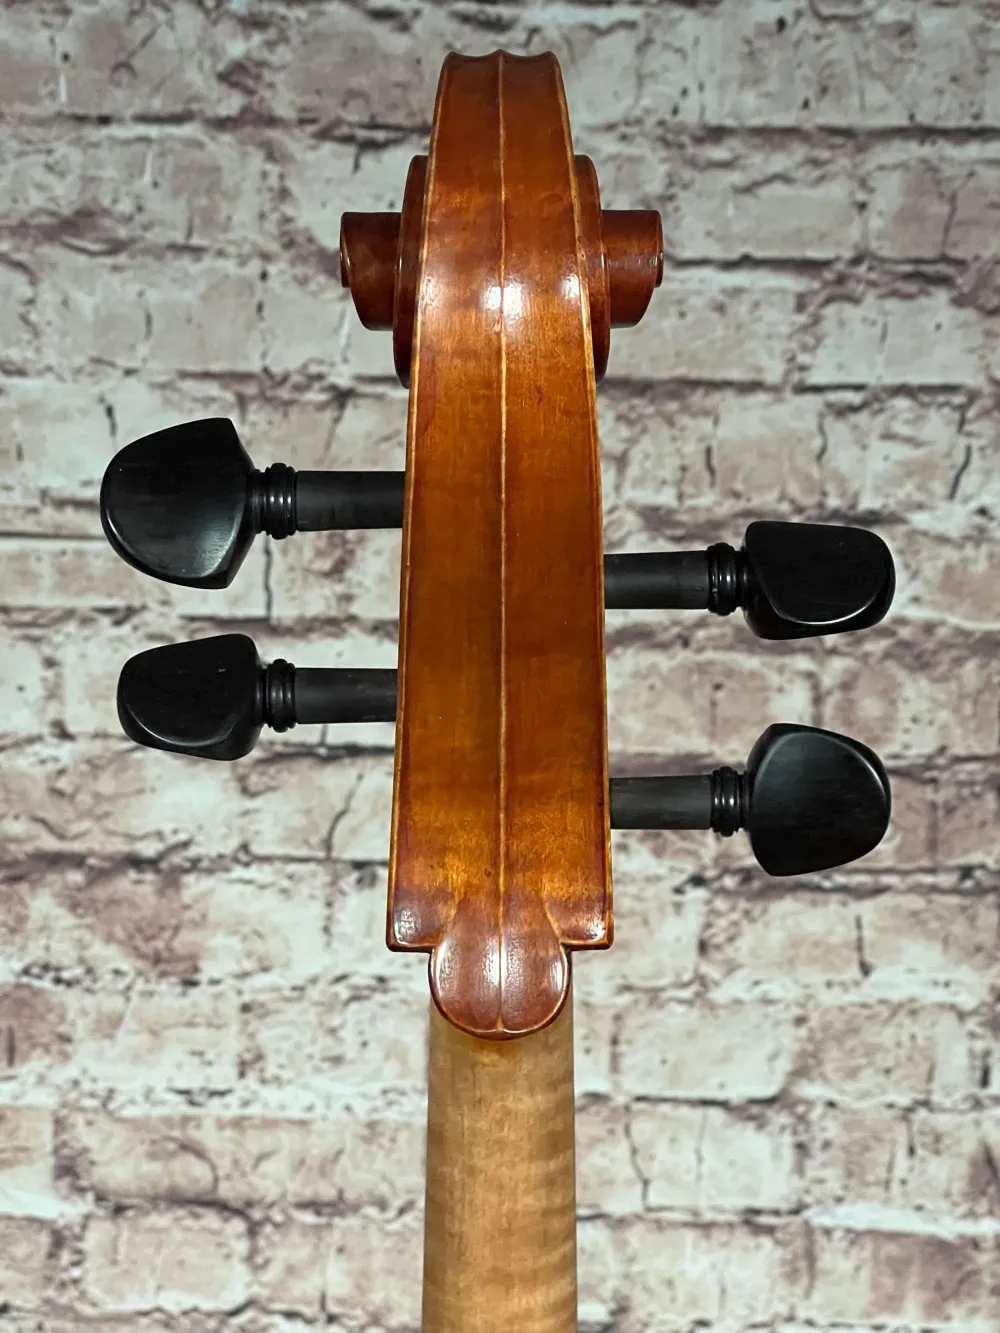 Schnecke-hinten-Detailansicht eines Harsan Mihai nach Francesco Ruggeri Cello (Violoncello) Handarbeit 2018